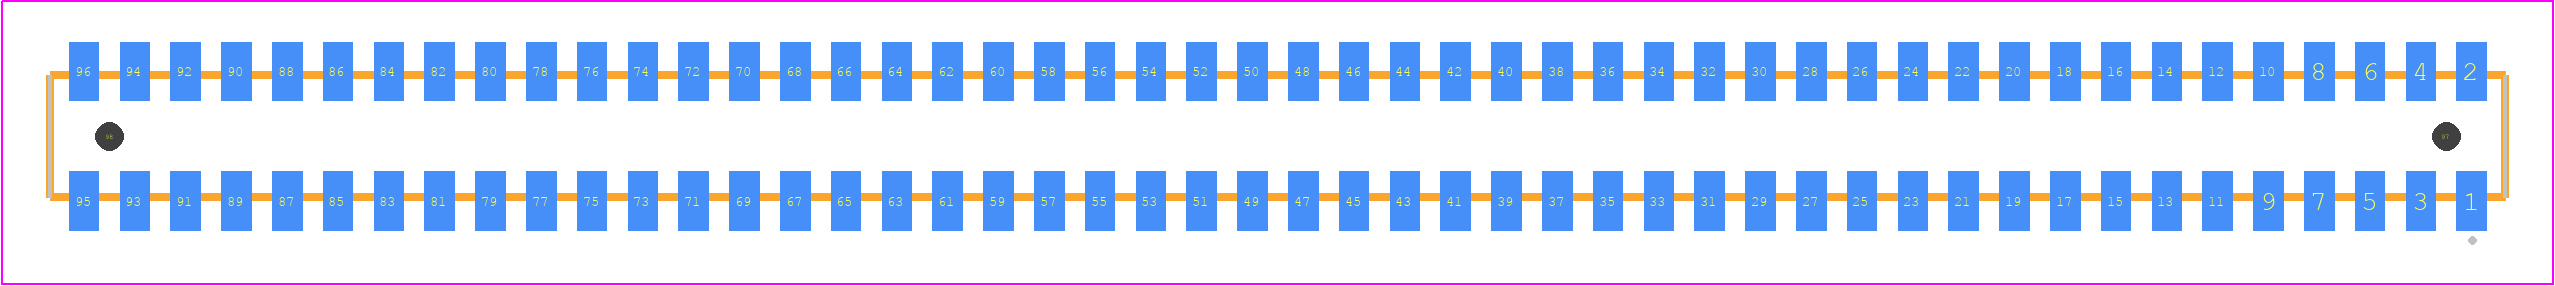 CLP-148-02-LM-D-A-K-TR - SAMTEC PCB footprint - Other - Other - CLP-148-02-XXX-D-A-K-TR